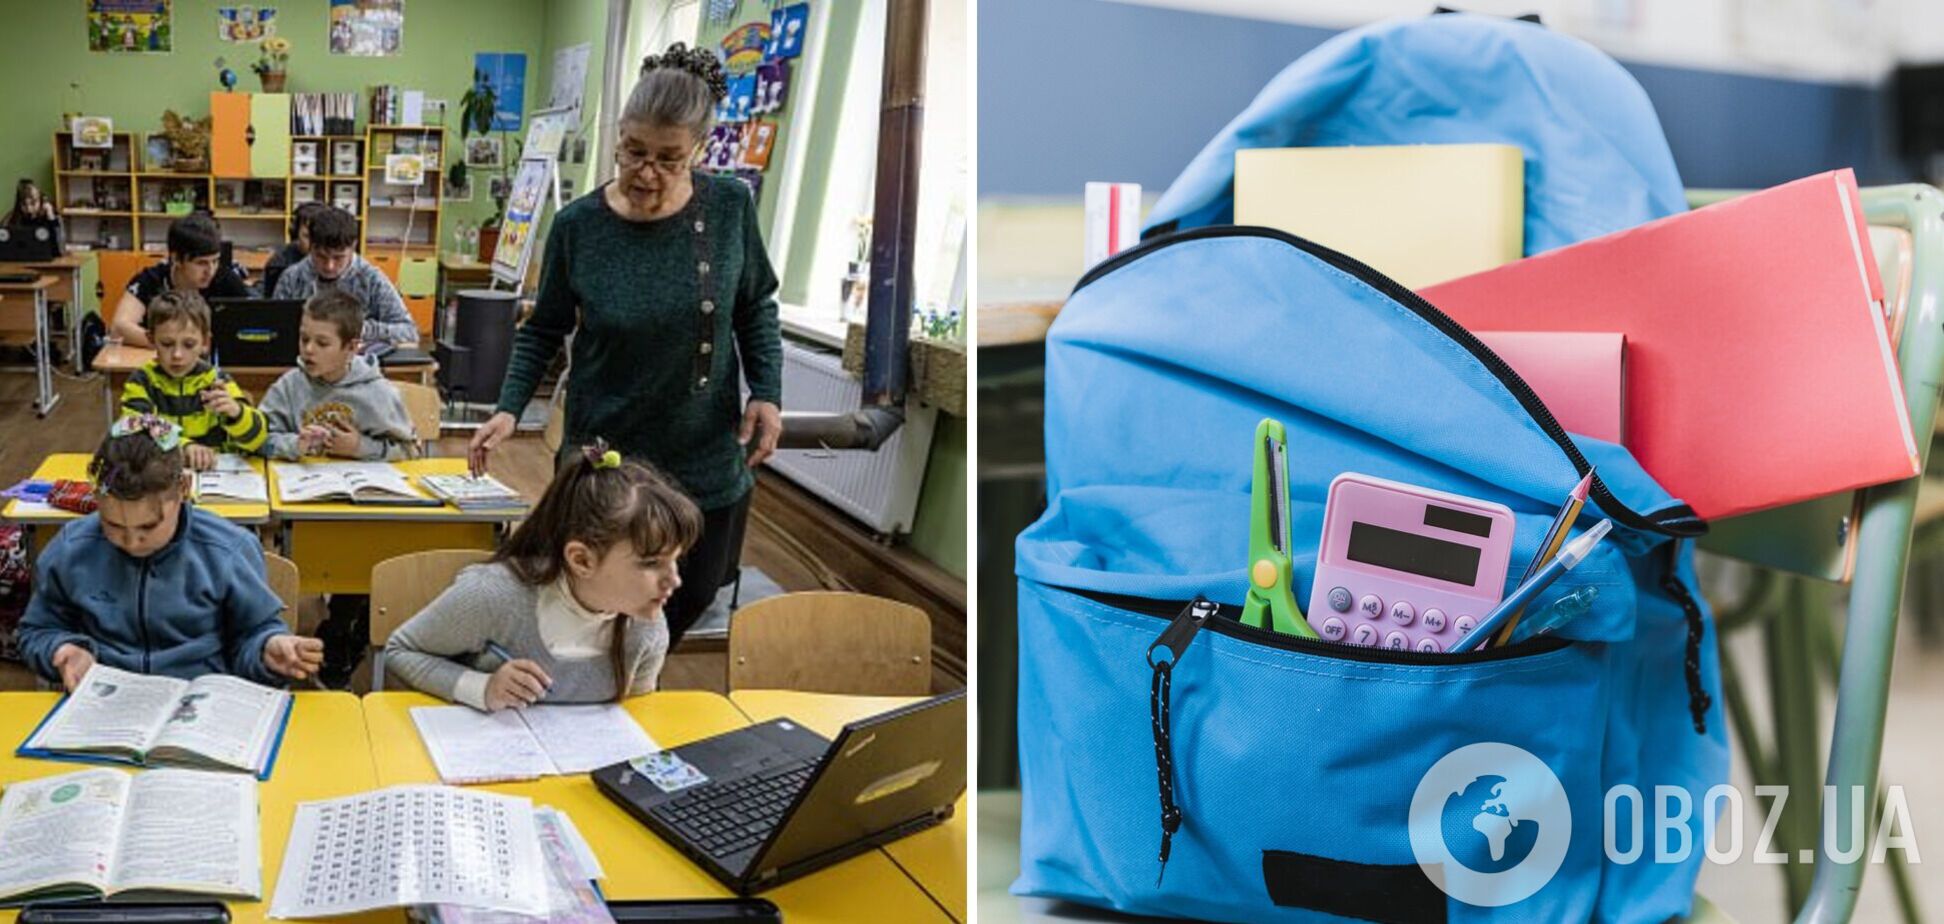 Школы и детские сады Одессы переводят на дистанционку из-за угрозы баллистики: какие заведения смогут работать офлайн